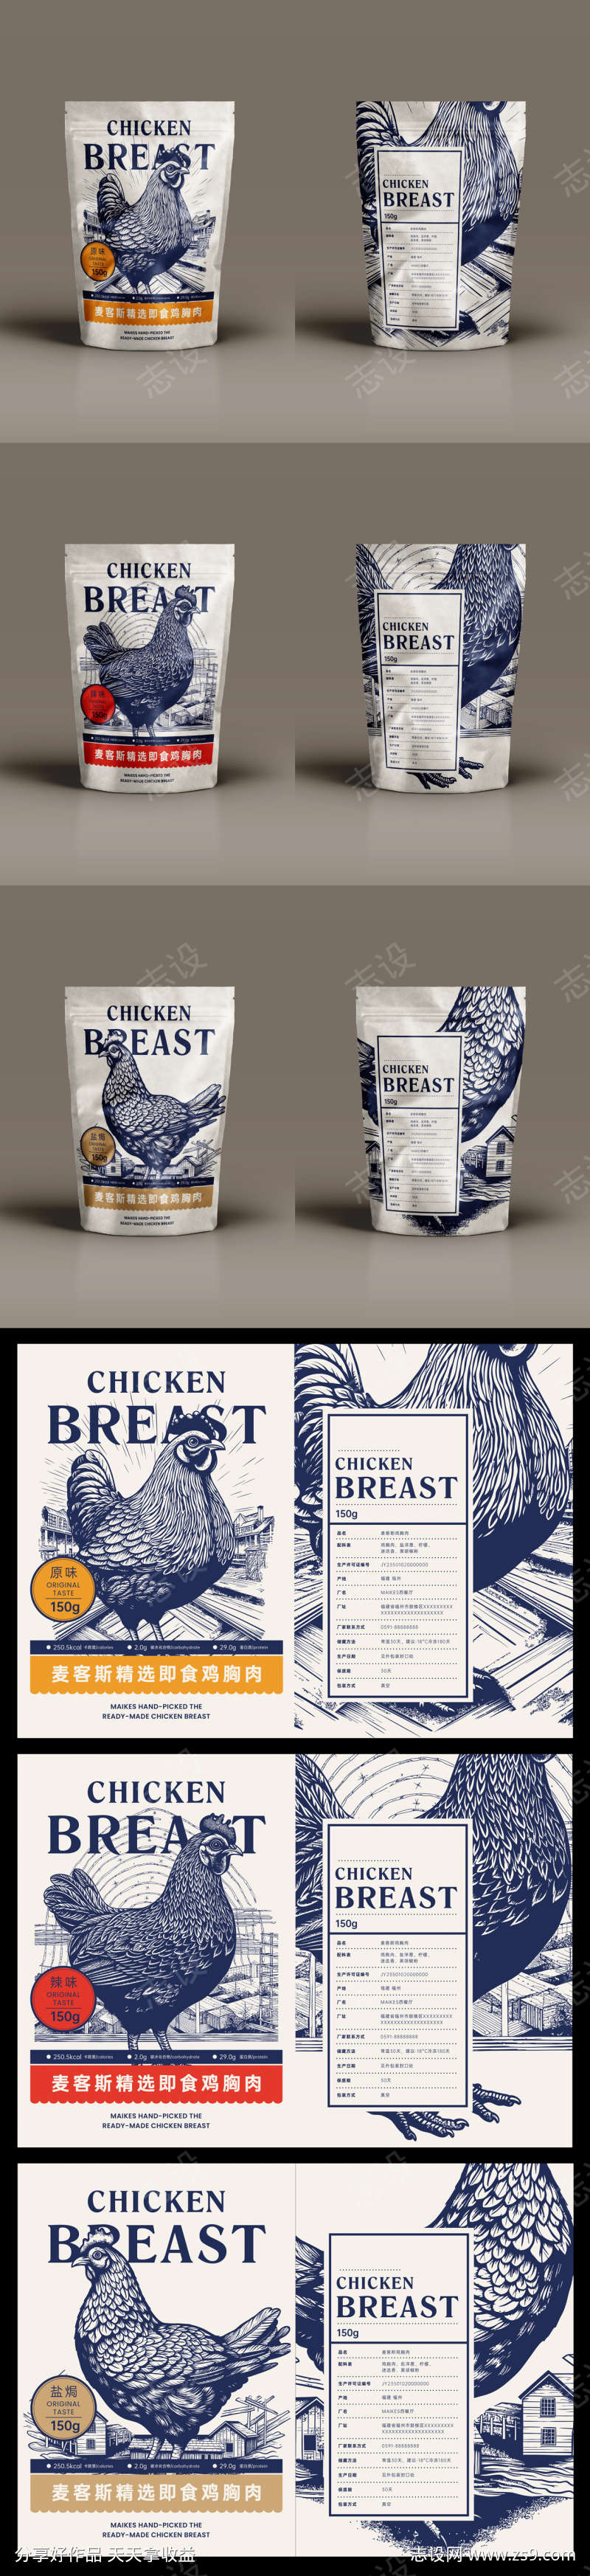 鸡胸肉包装设计